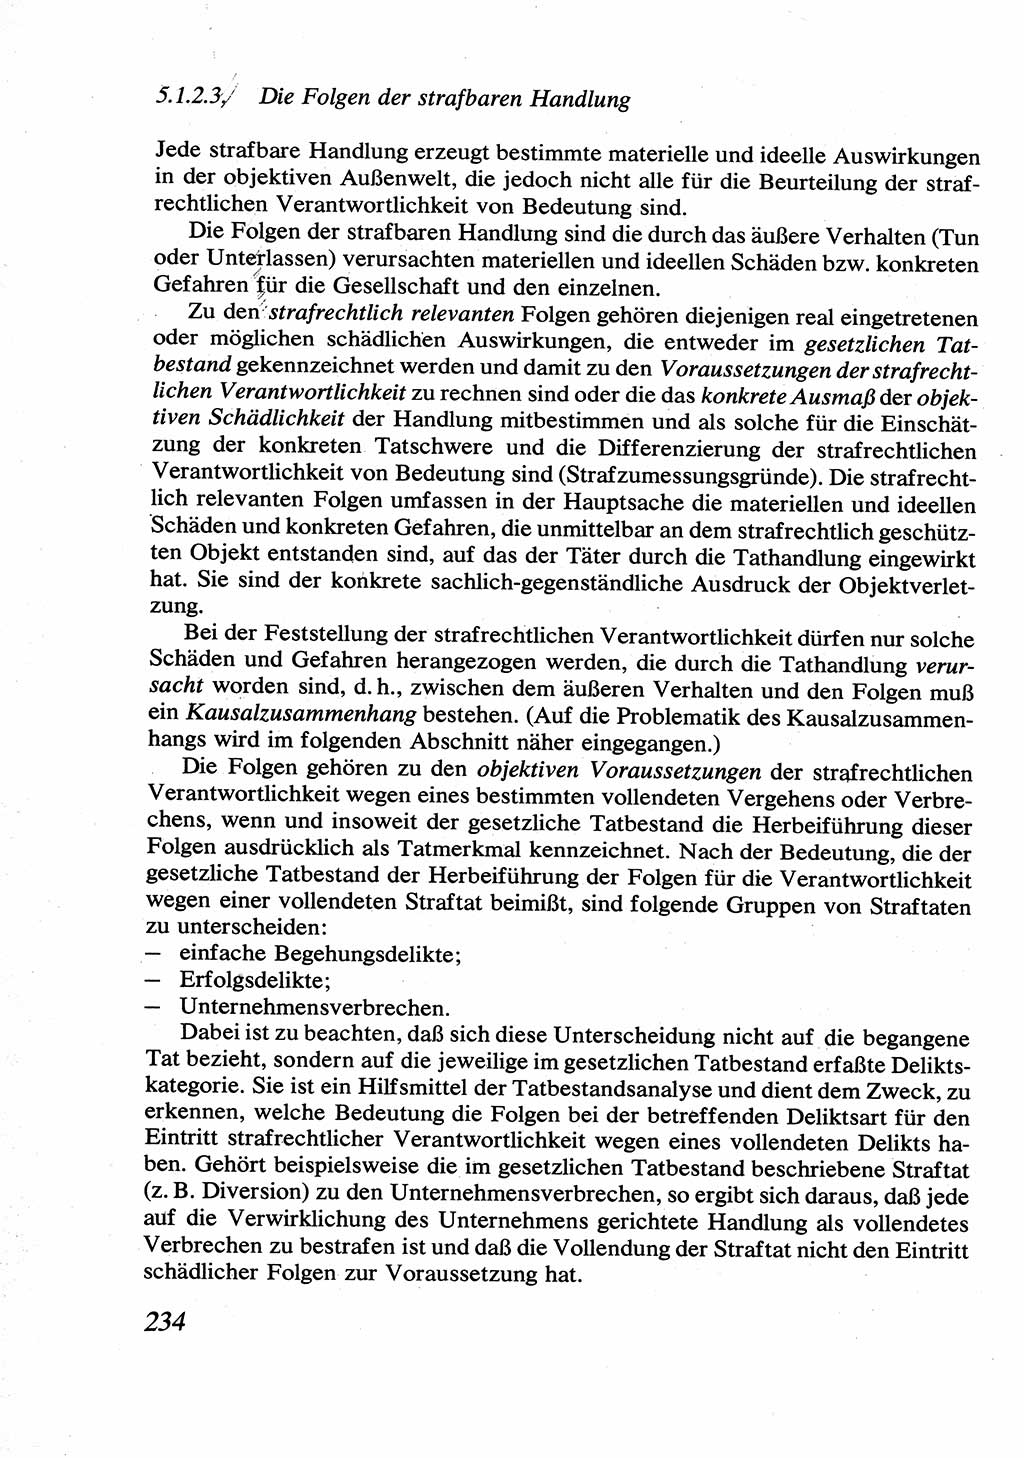 Strafrecht [Deutsche Demokratische Republik (DDR)], Allgemeiner Teil, Lehrbuch 1976, Seite 234 (Strafr. DDR AT Lb. 1976, S. 234)